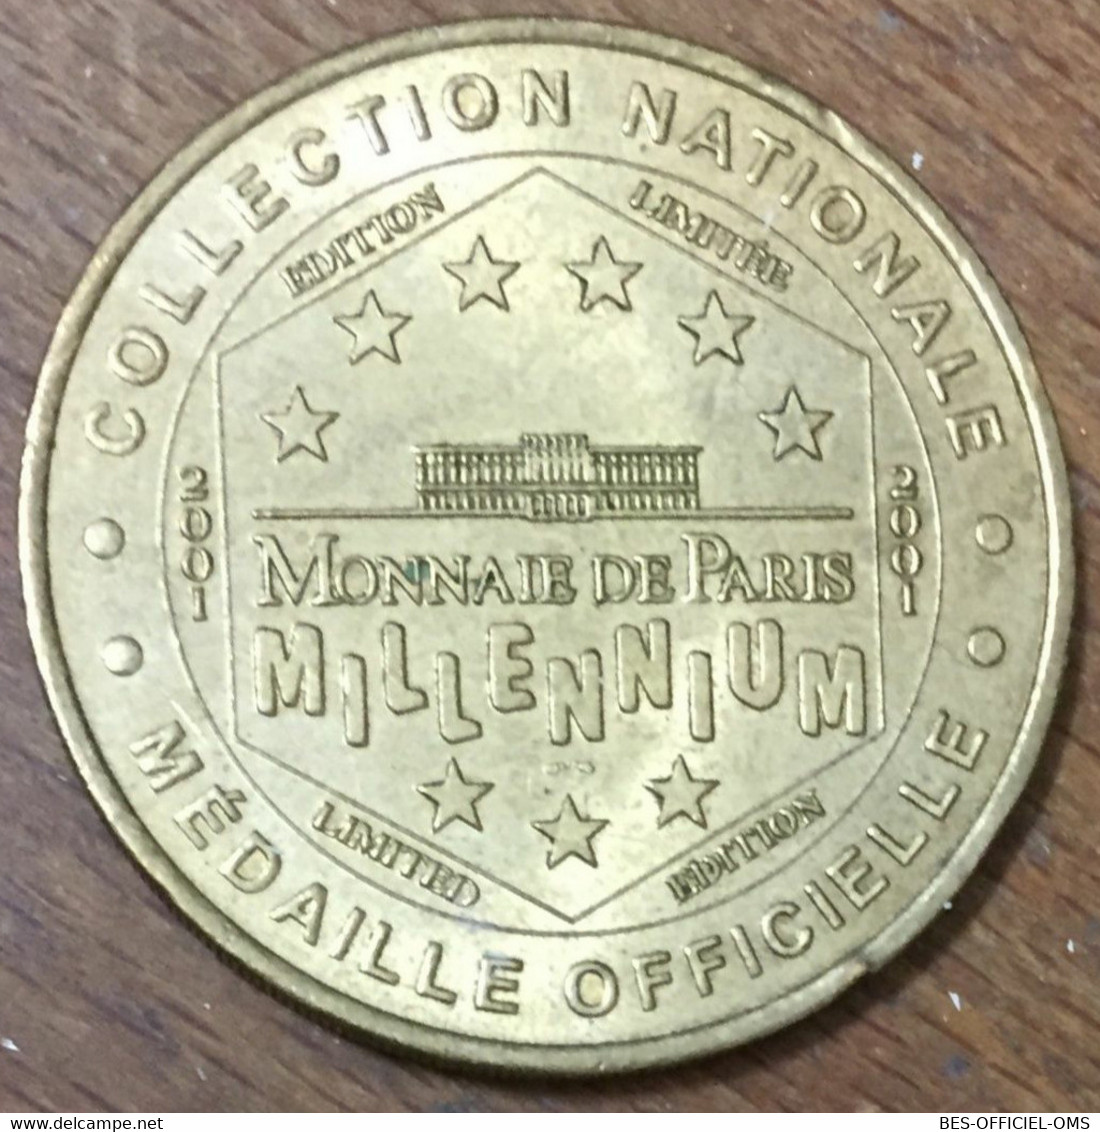 75018 PARIS BASILIQUE SACRÉ-COEUR MONTMARTRE MDP 2001 MÉDAILLE MONNAIE DE PARIS JETON TOURISTIQUE MEDALS COINS TOKENS - 2001